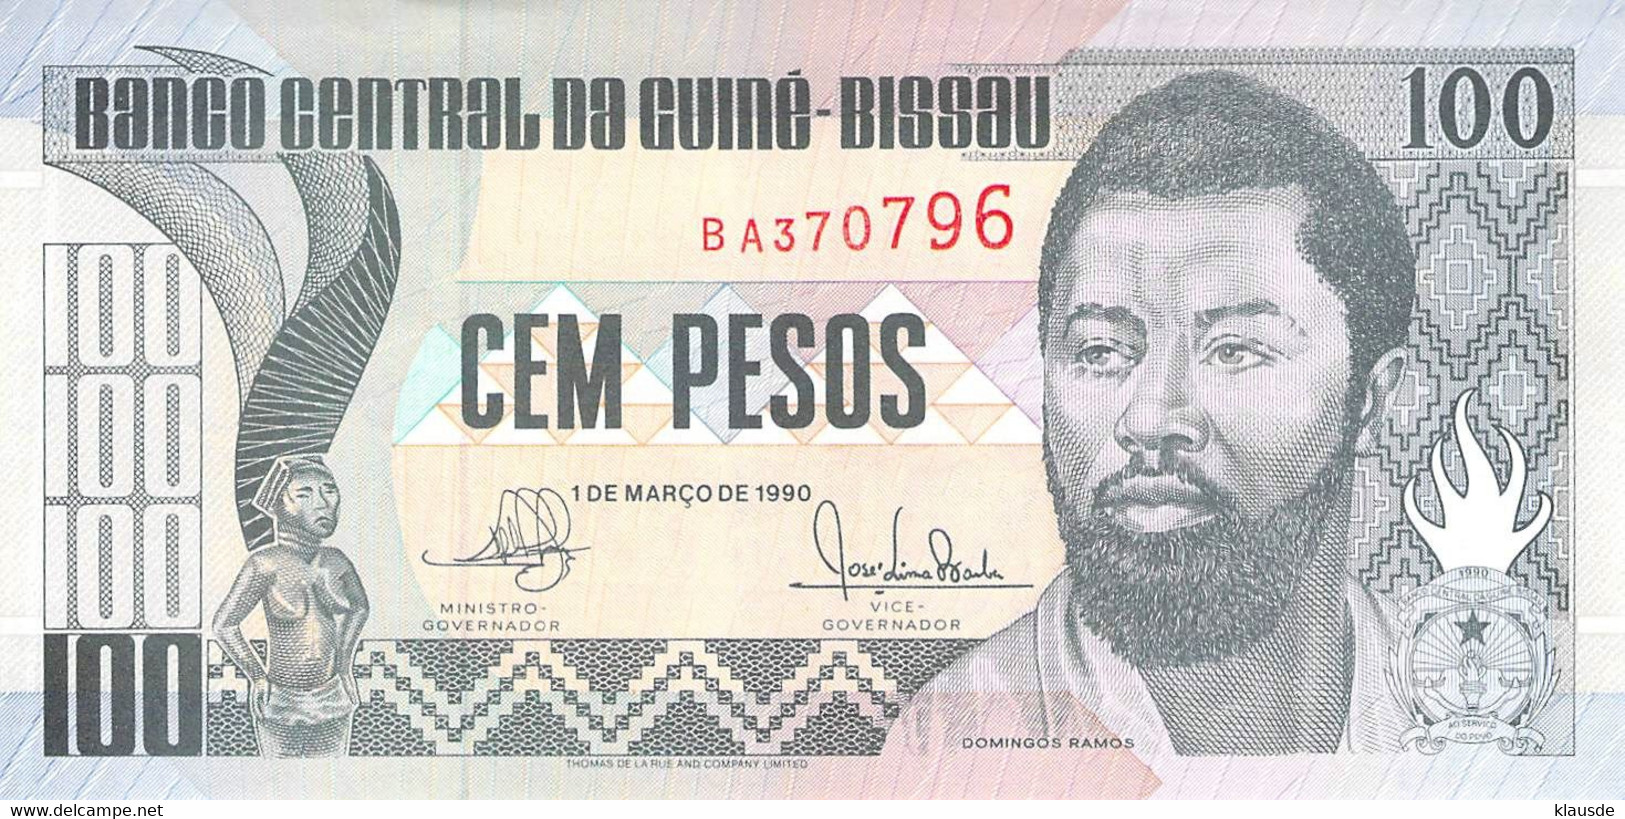 100 Pesos Guines-Bissau 1990 UNC - Guinee-Bissau